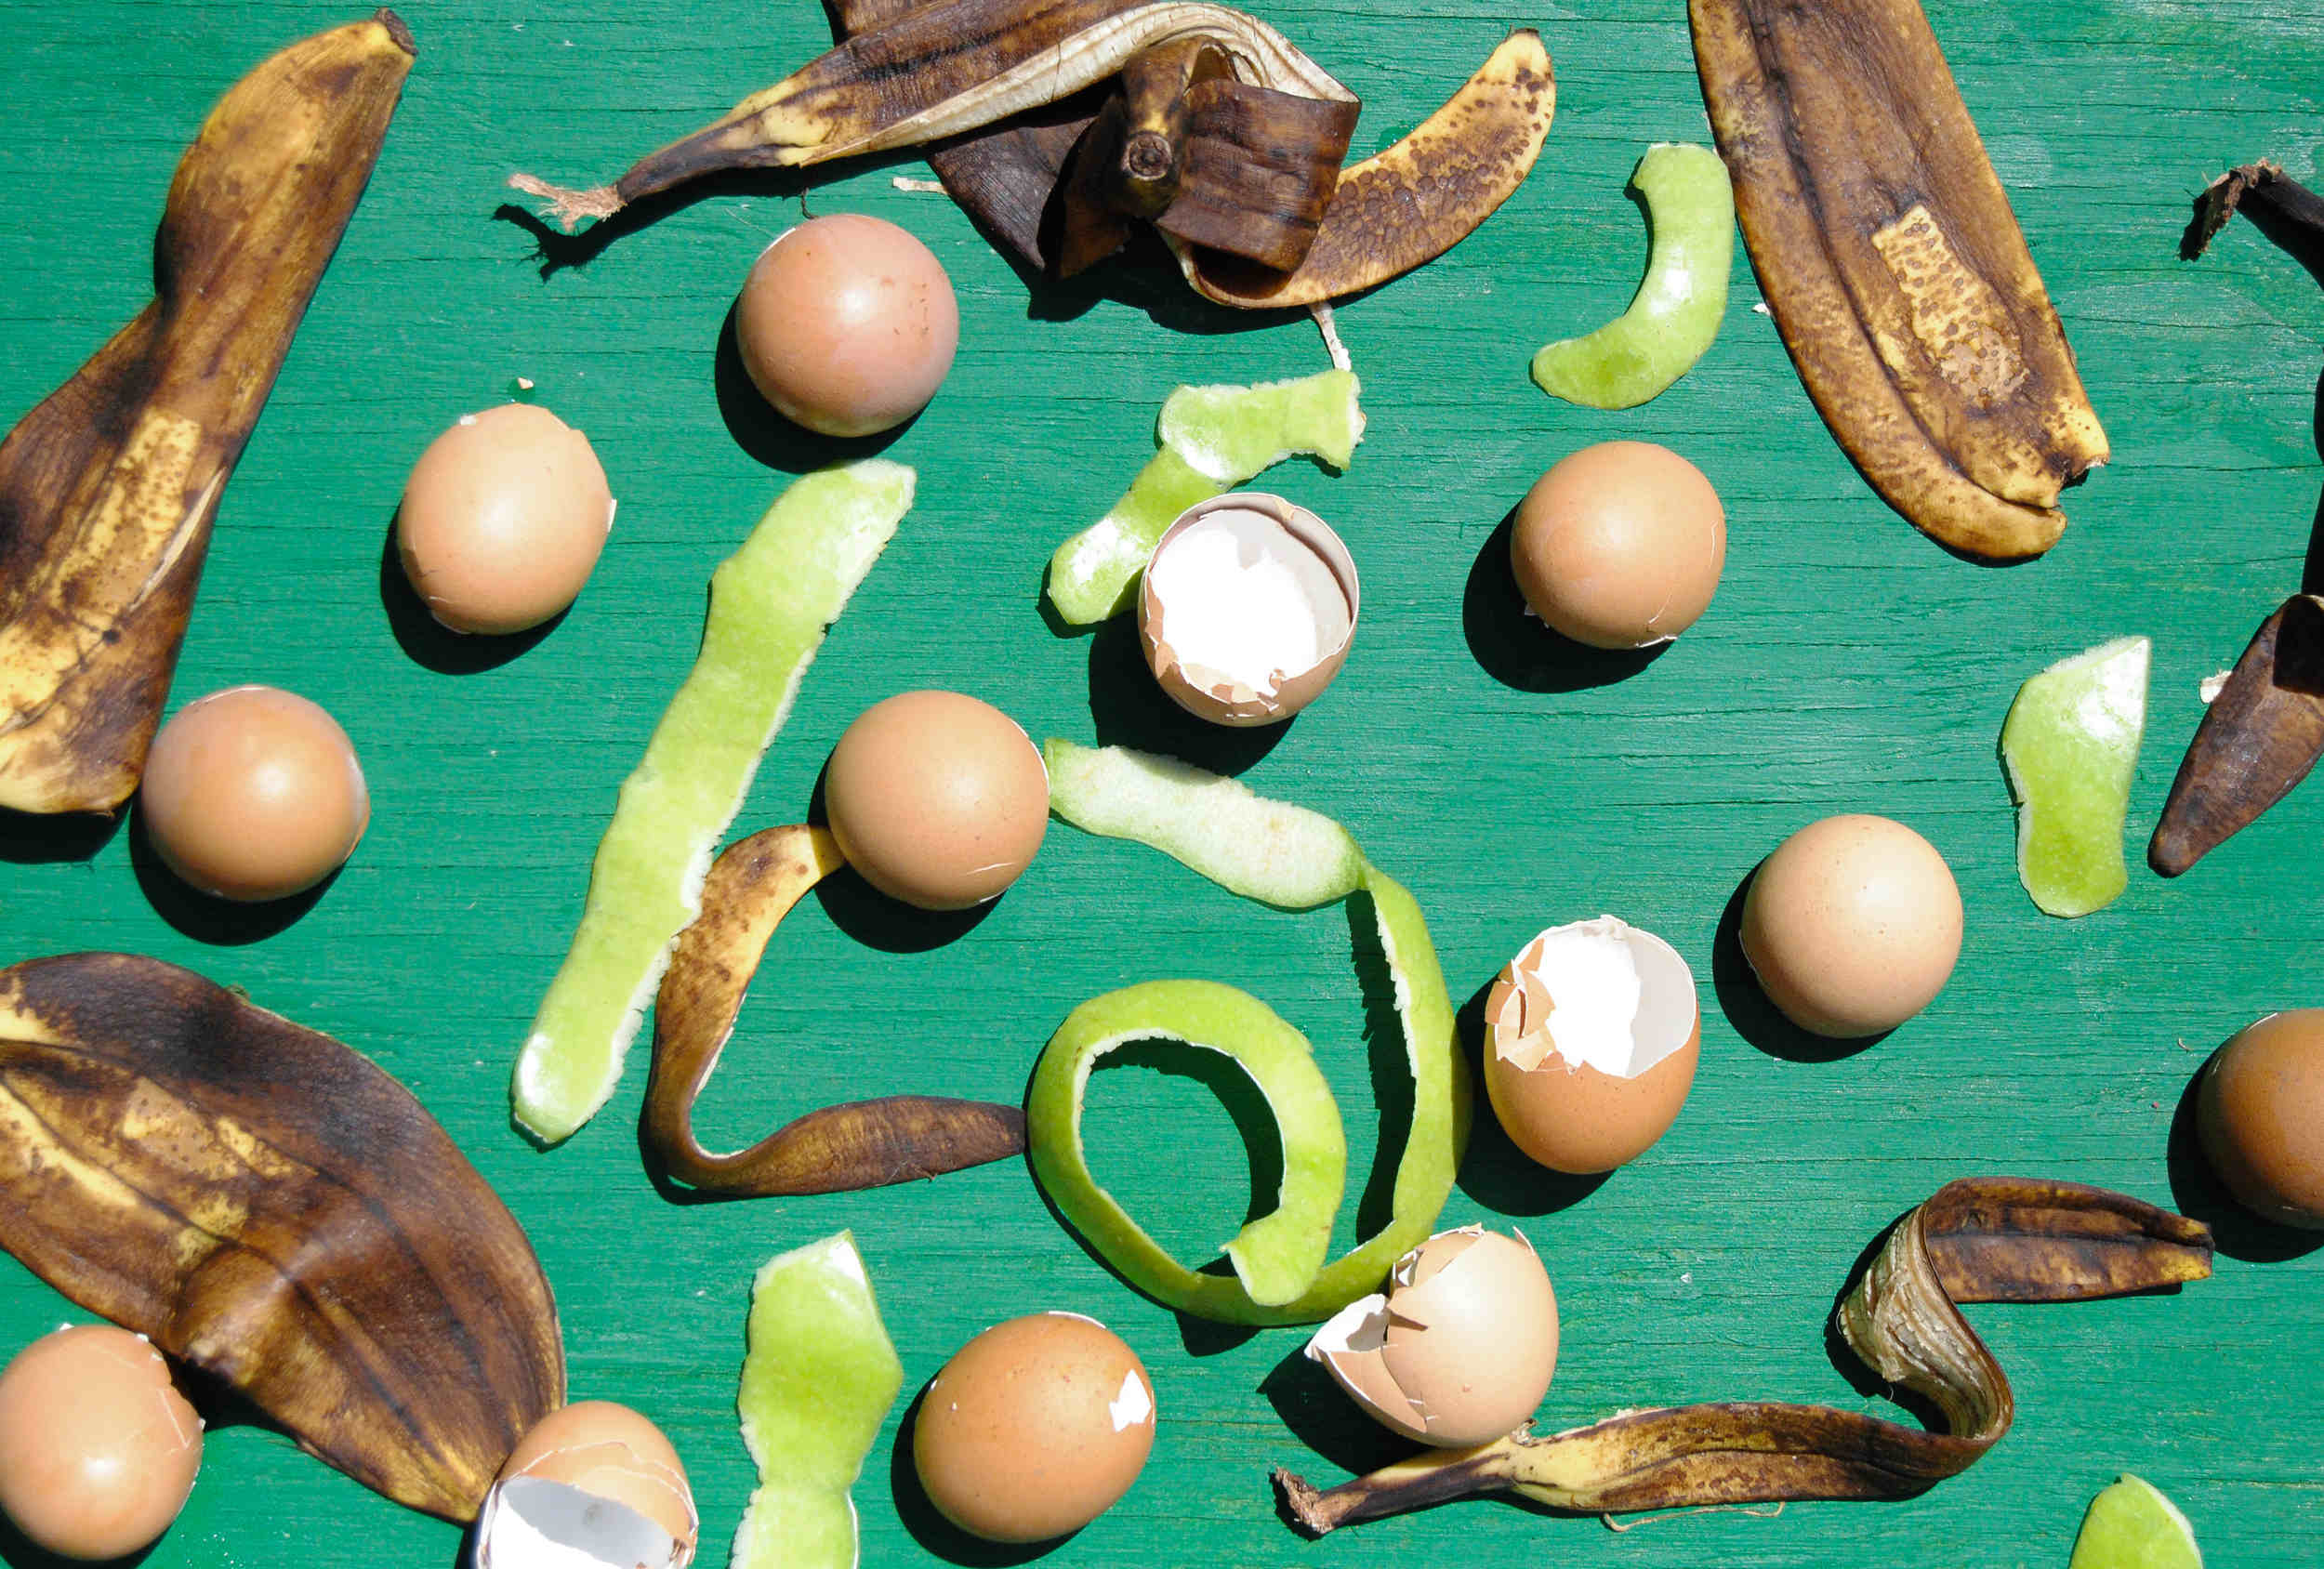 food waste represented by eggshells banana peels and apple peel